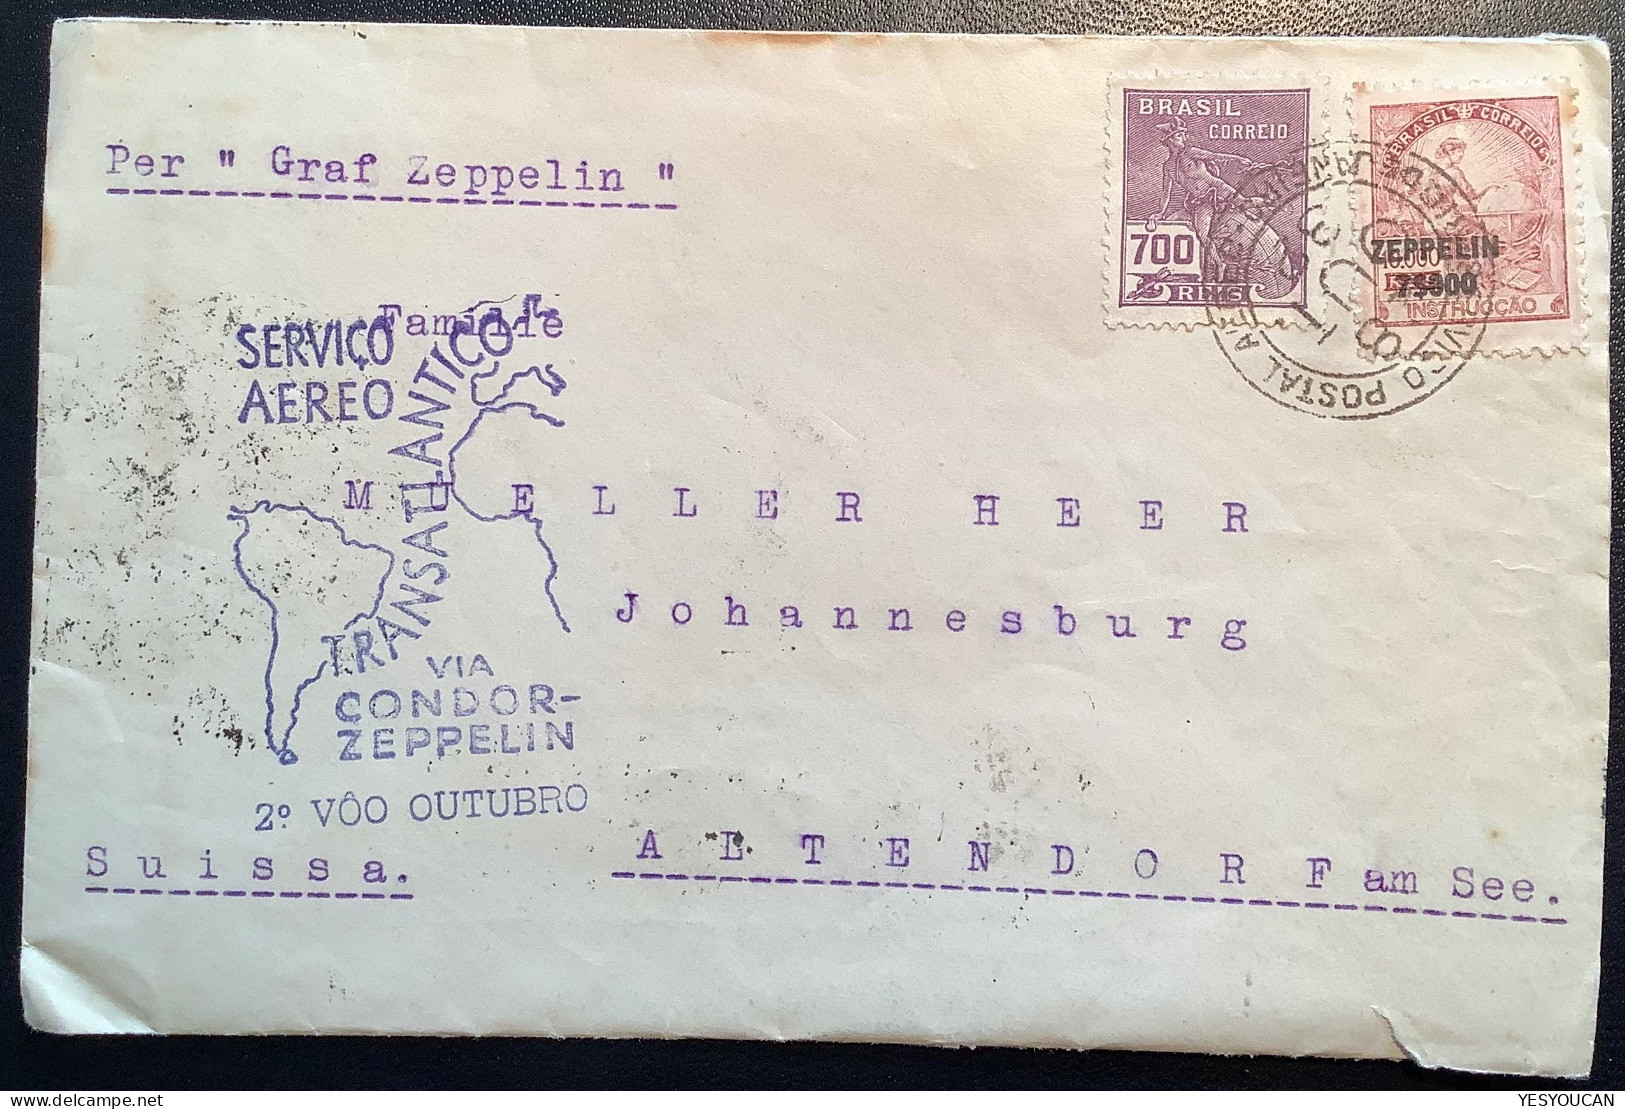 CONDOR-ZEPPELIN1932 Flight„Pedro Elmer Petropolis“cover>Müller-Heer, Altendorf SZ Schweiz (Brazil Luftpost Brief Schweiz - Airmail